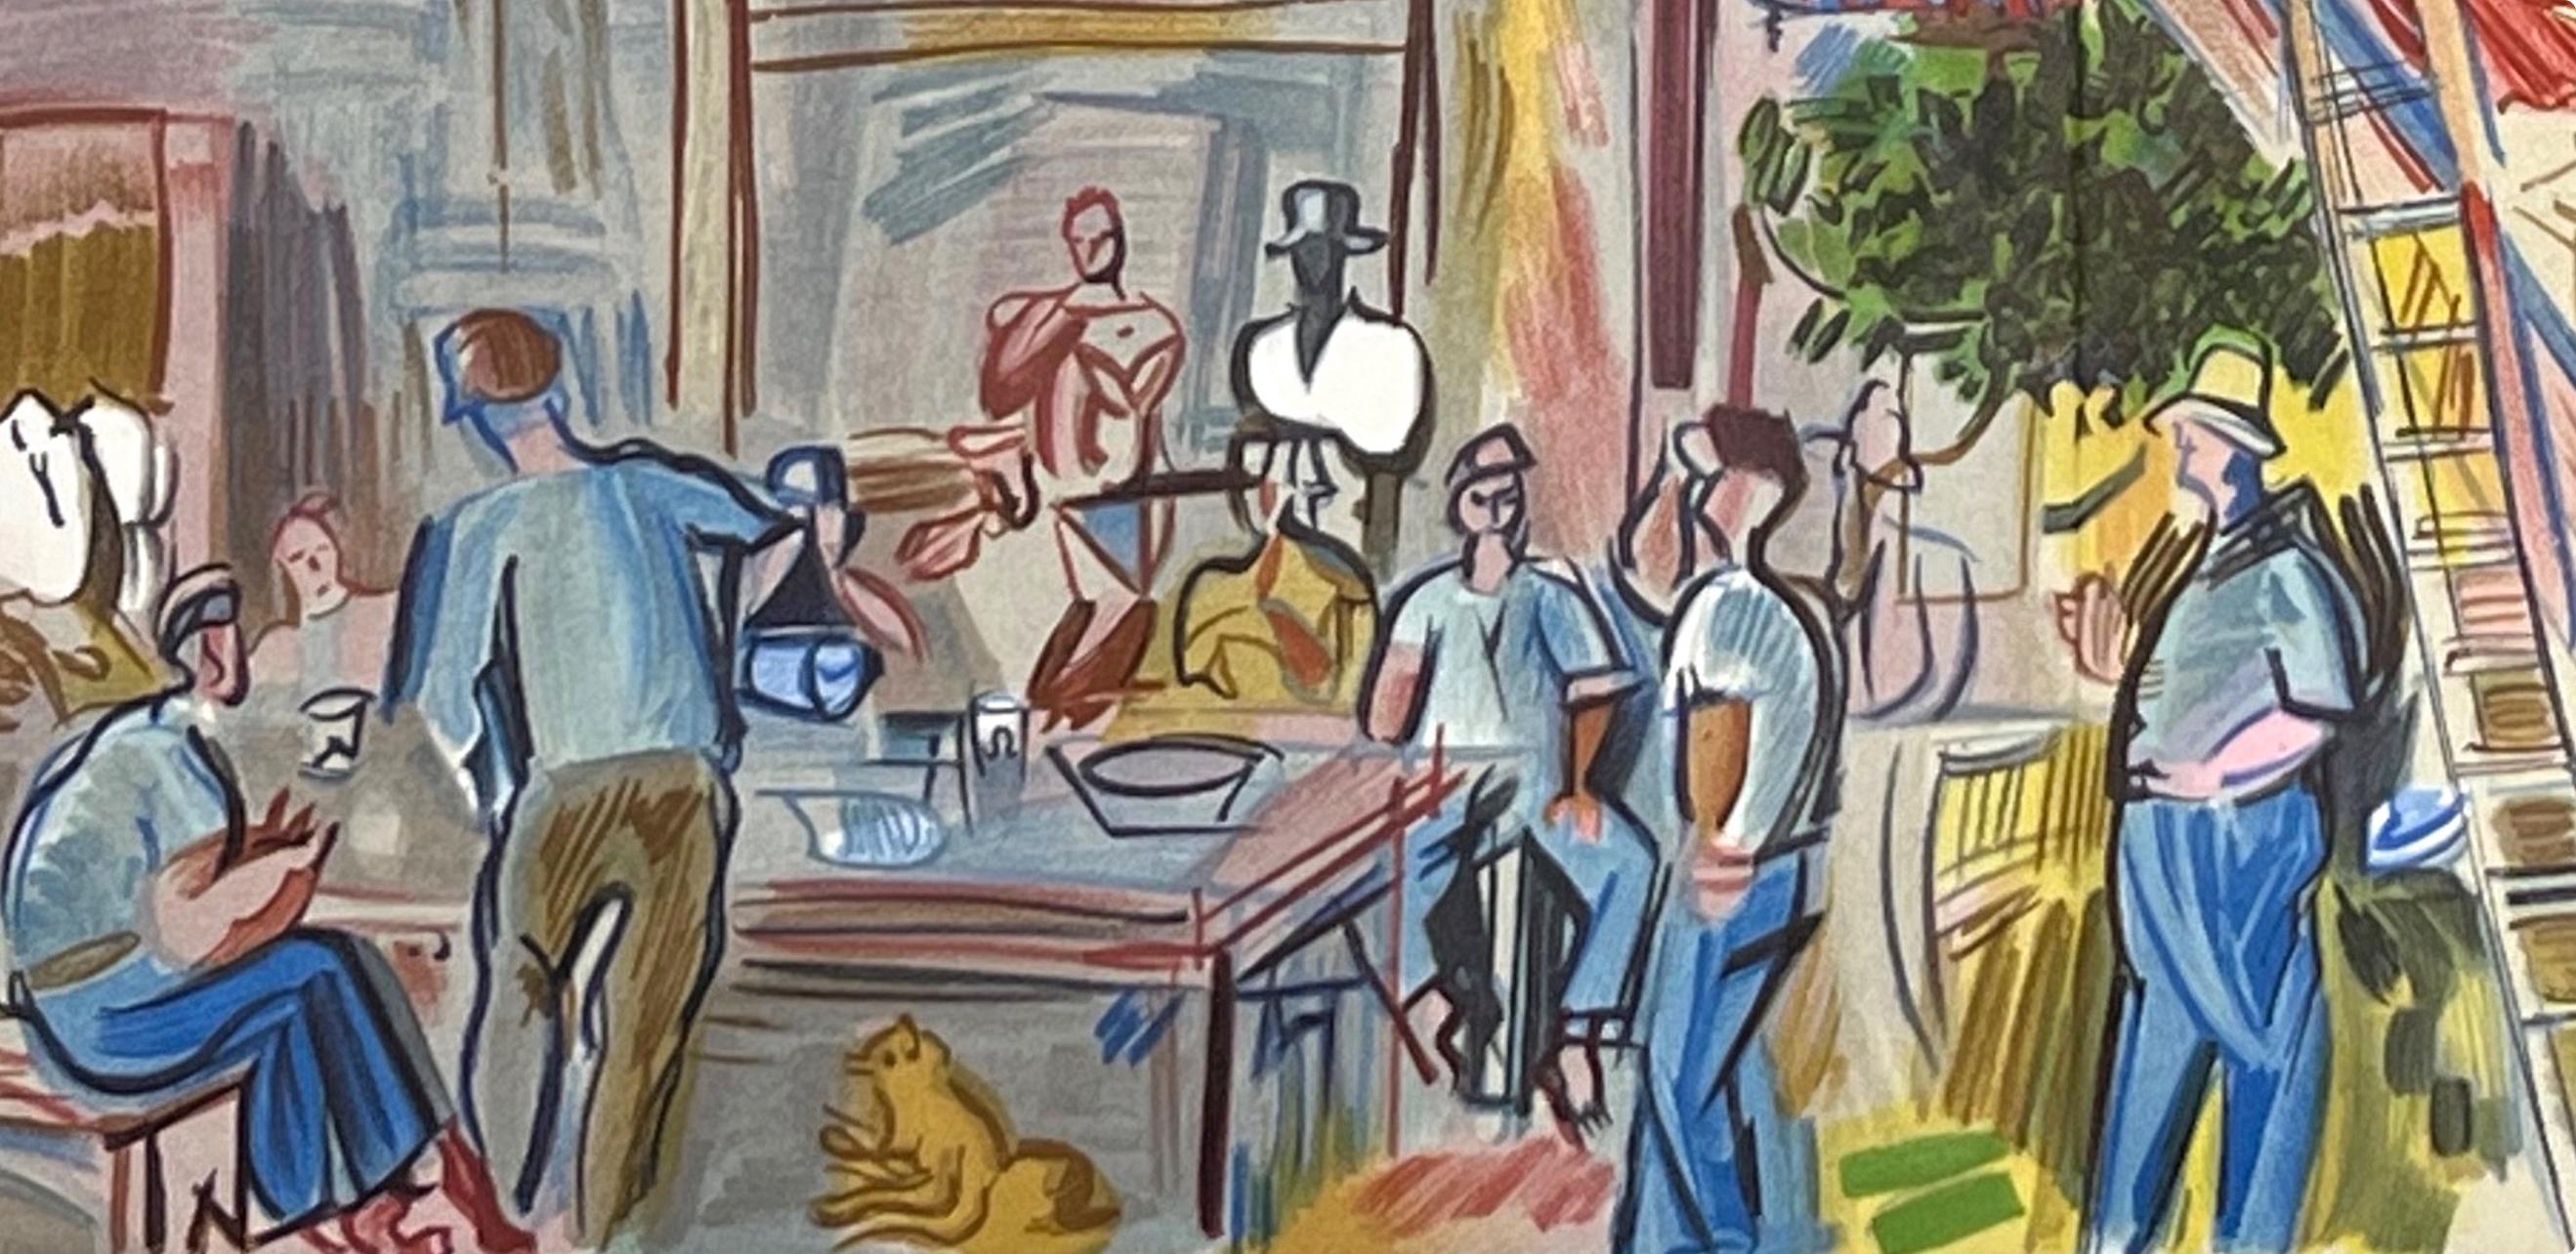 Dufy, Les Moissonneurs, Lettre à mon peintre Raoul Dufy (after) For Sale 3